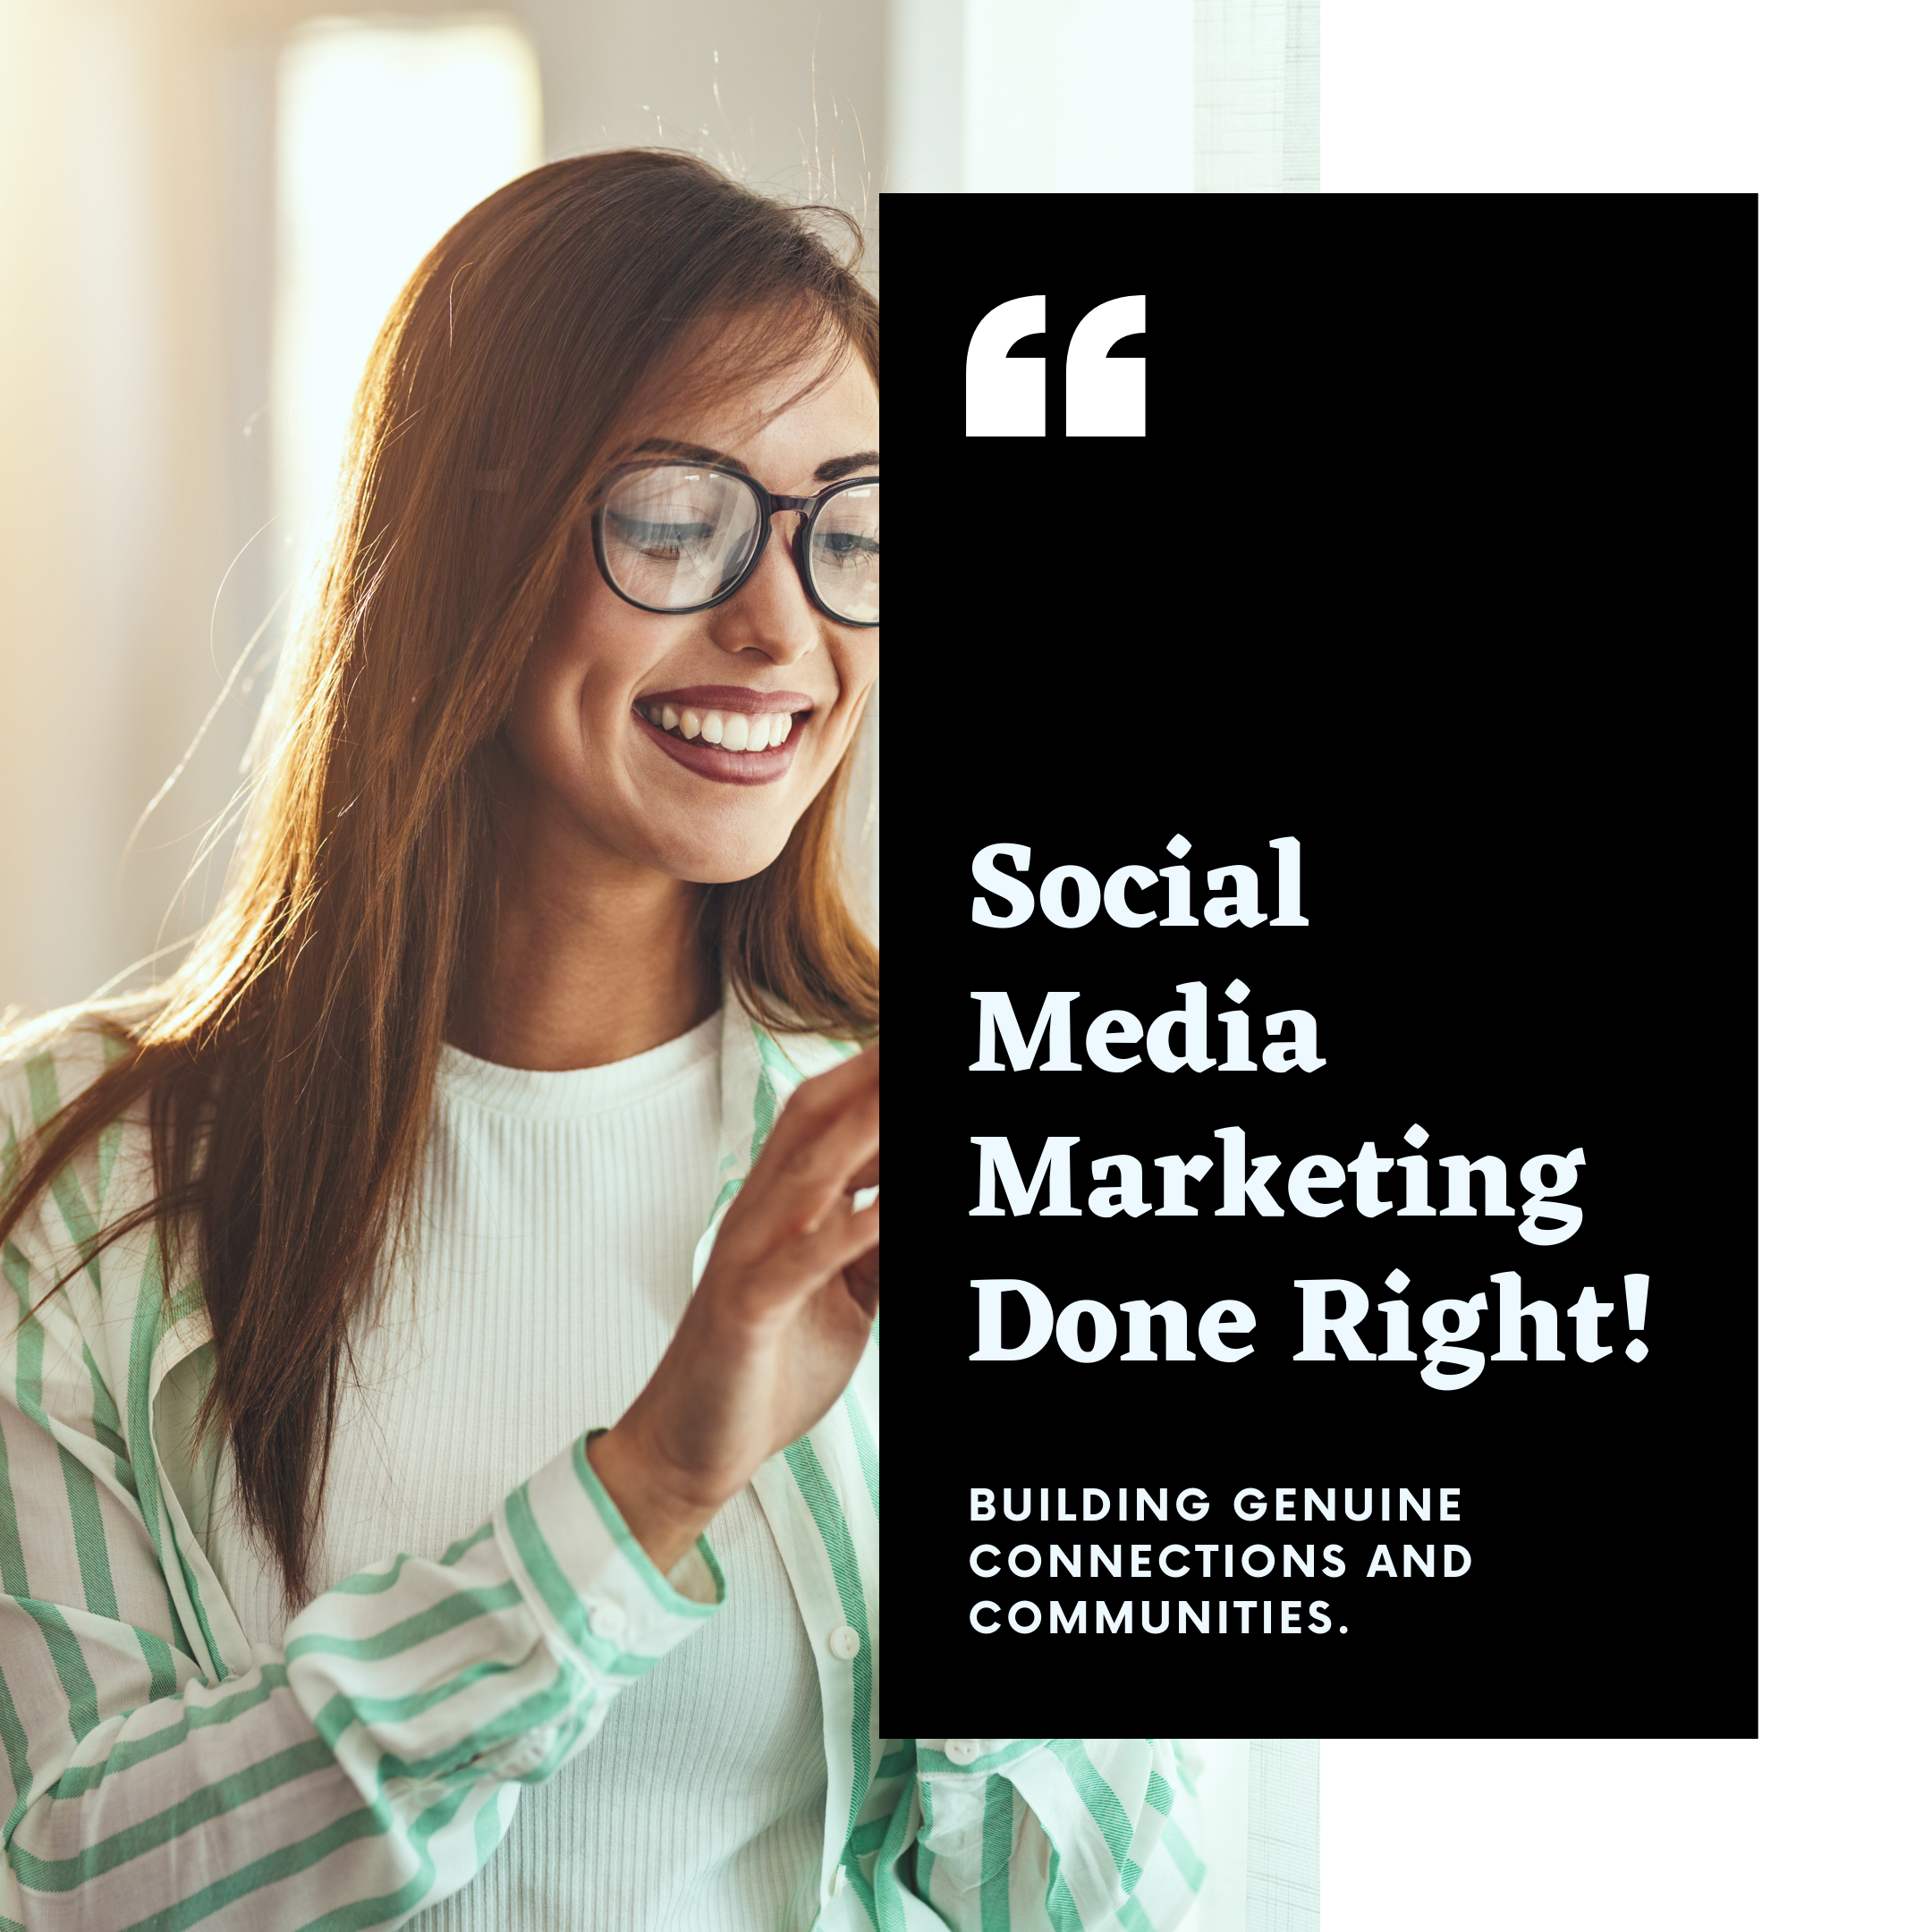 Social Media Marketing, Digital Marketing, Marketing Strategies, Marketing Goals